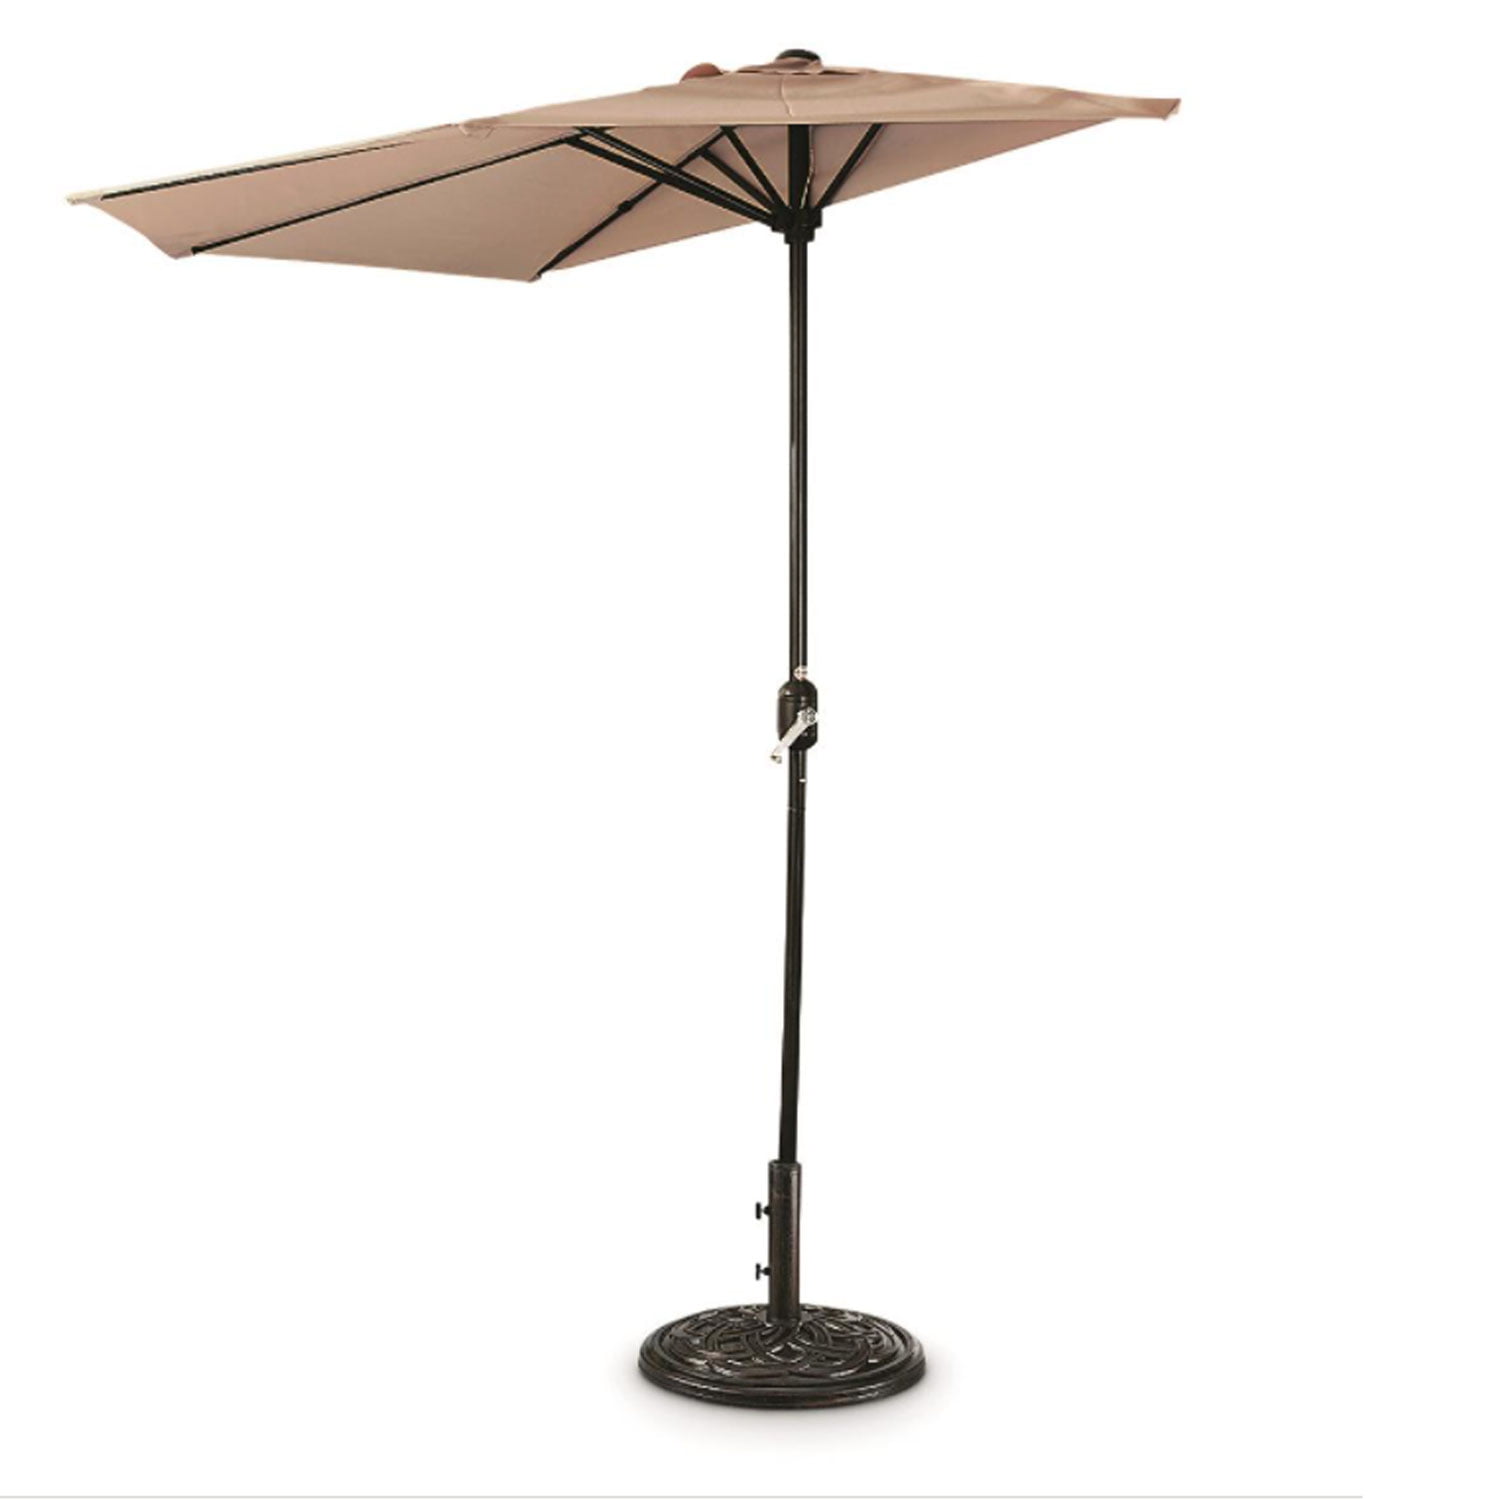 CASTLECREEK Bronze Patio Umbrella Base Round Garden Outdoor Parasol Holder Stand 